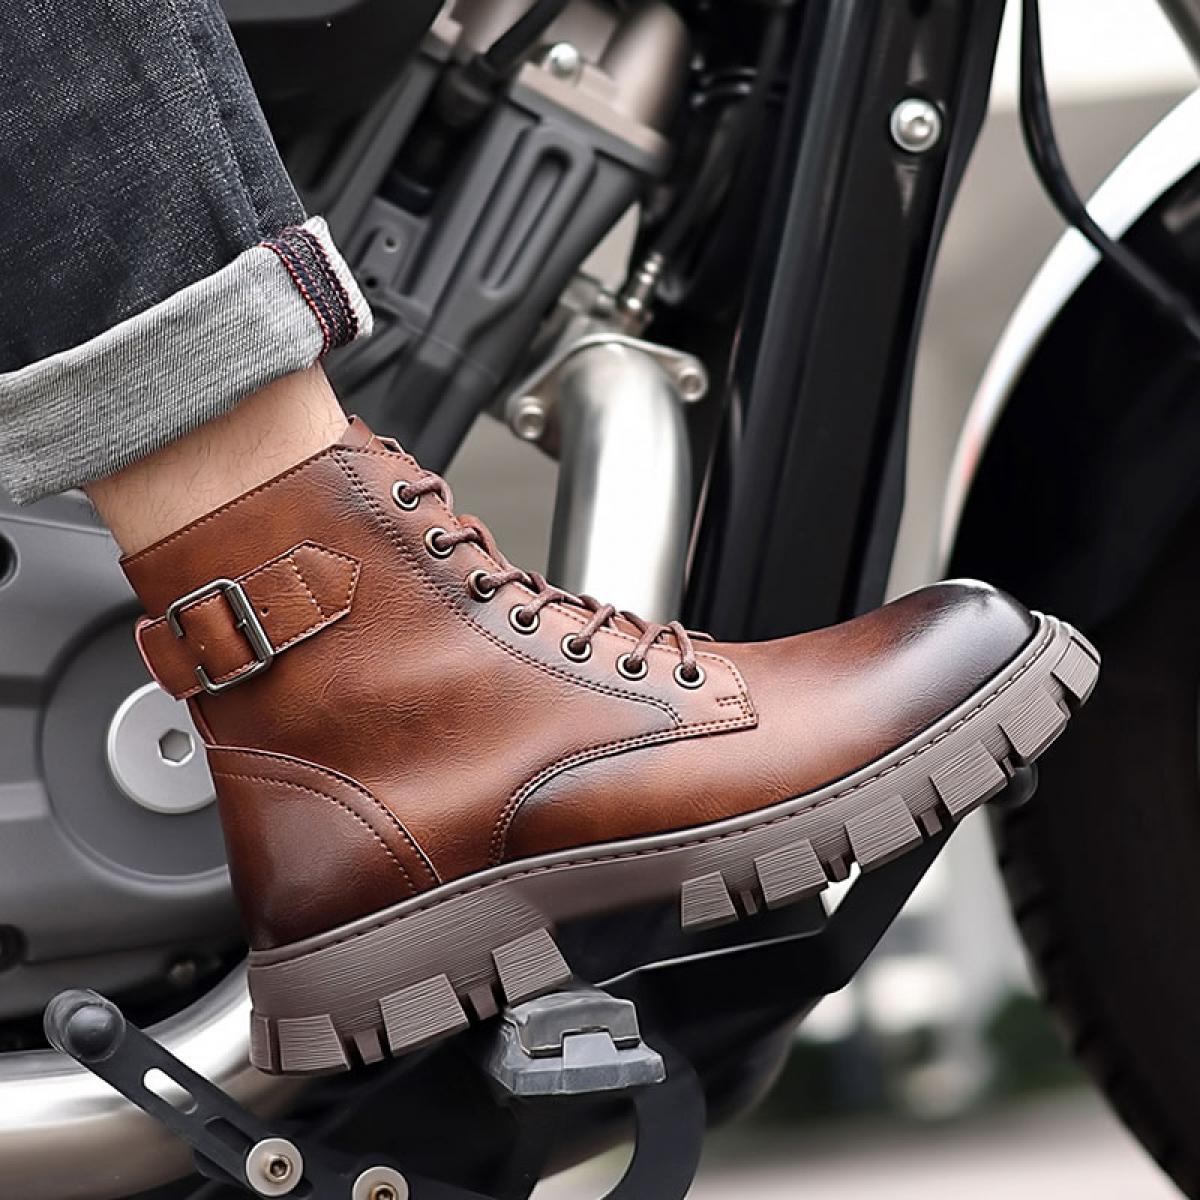 Martin botas masculinas de couro genuíno estilo britânico premium fundo grosso outono respirável alta superior da motocicleta cu